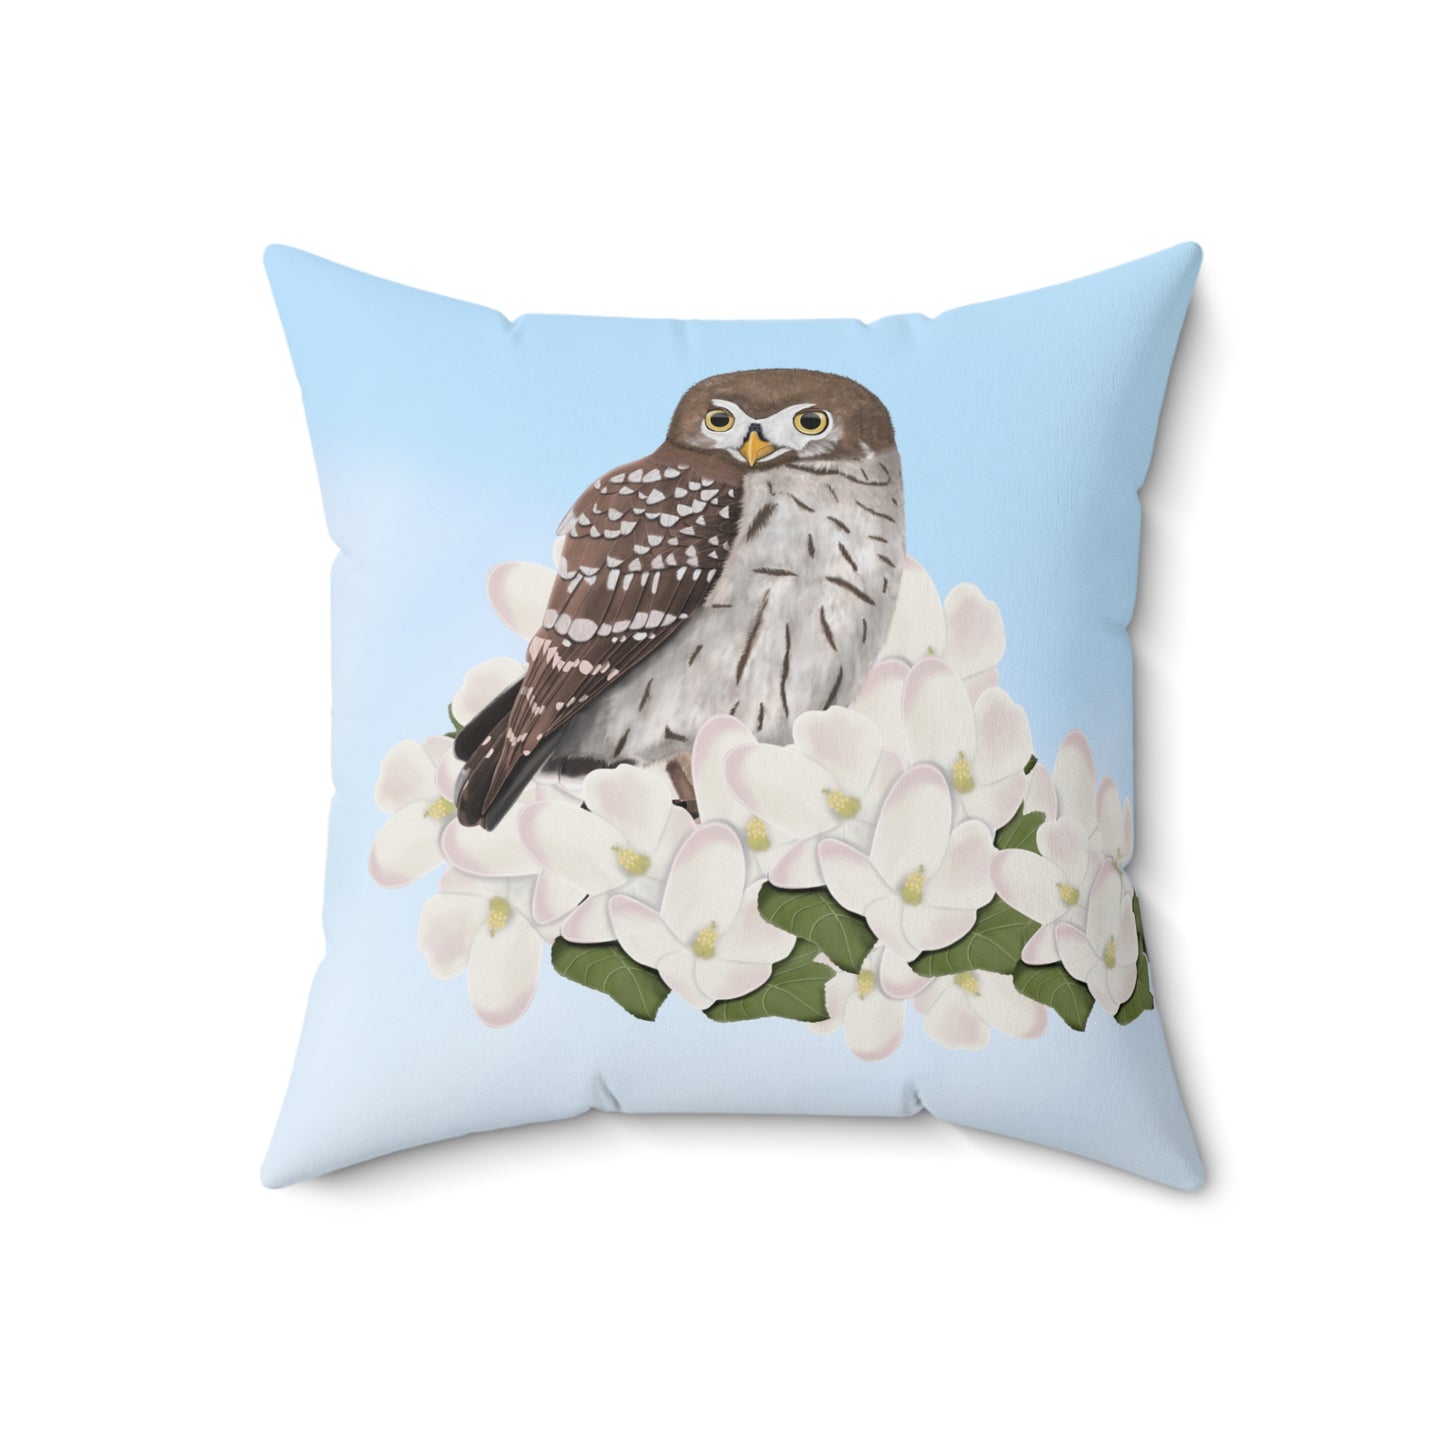 Little Owl and Apple Blossoms Bird Throw Pillow 16"x16"